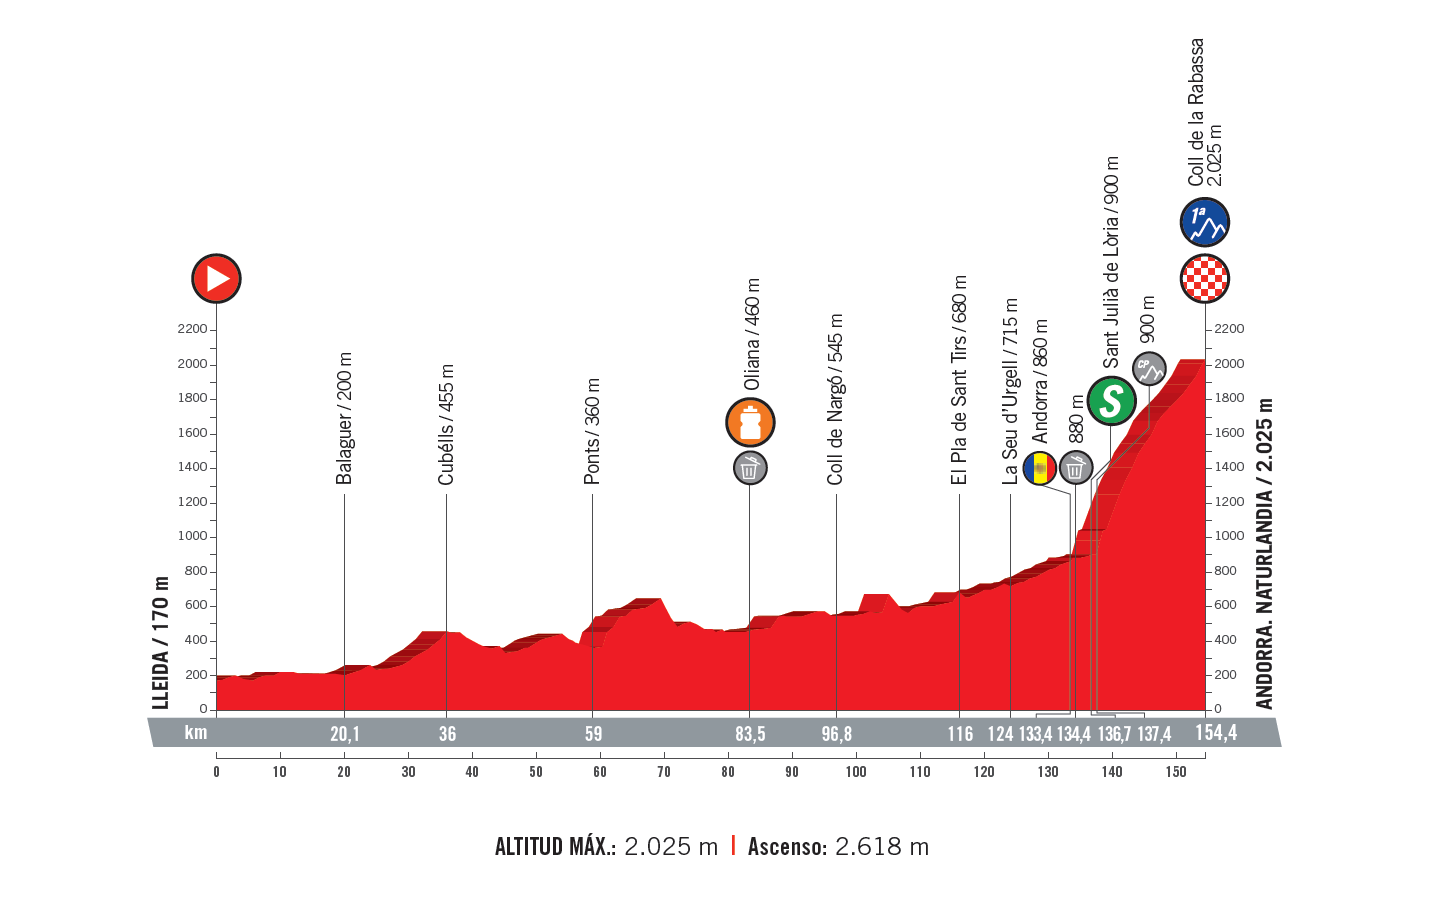 profil 19. etapu Vuelta a Espana 2018